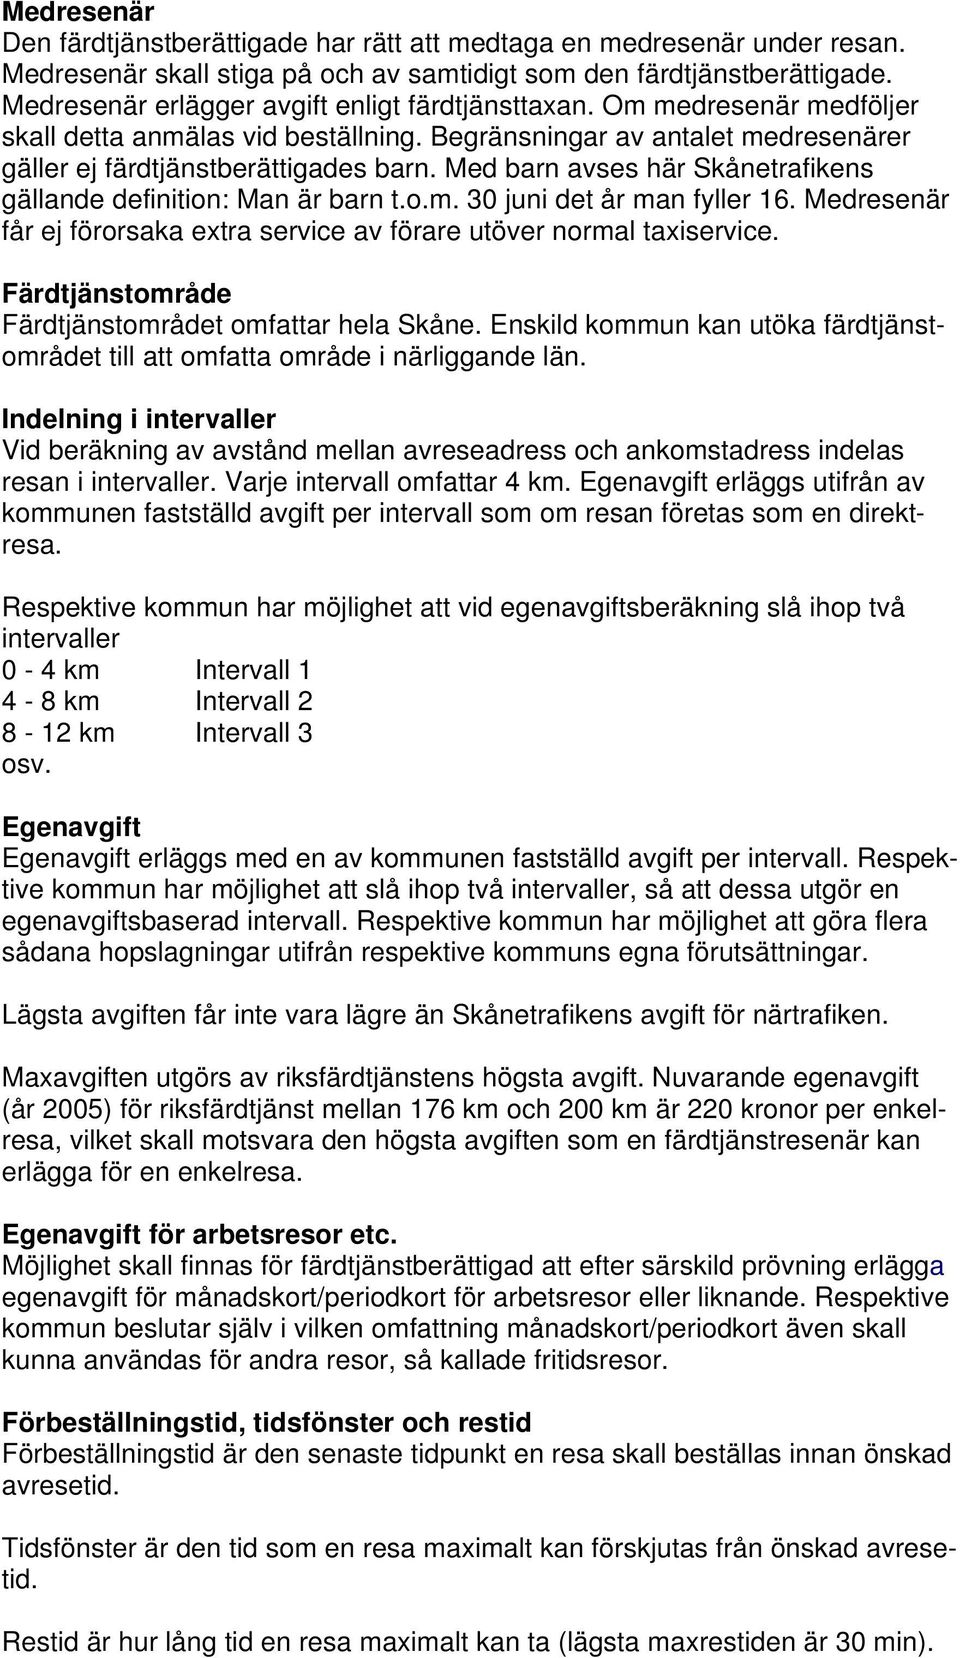 Med barn avses här Skånetrafikens gällande definition: Man är barn t.o.m. 30 juni det år man fyller 16. Medresenär får ej förorsaka extra service av förare utöver normal taxiservice.